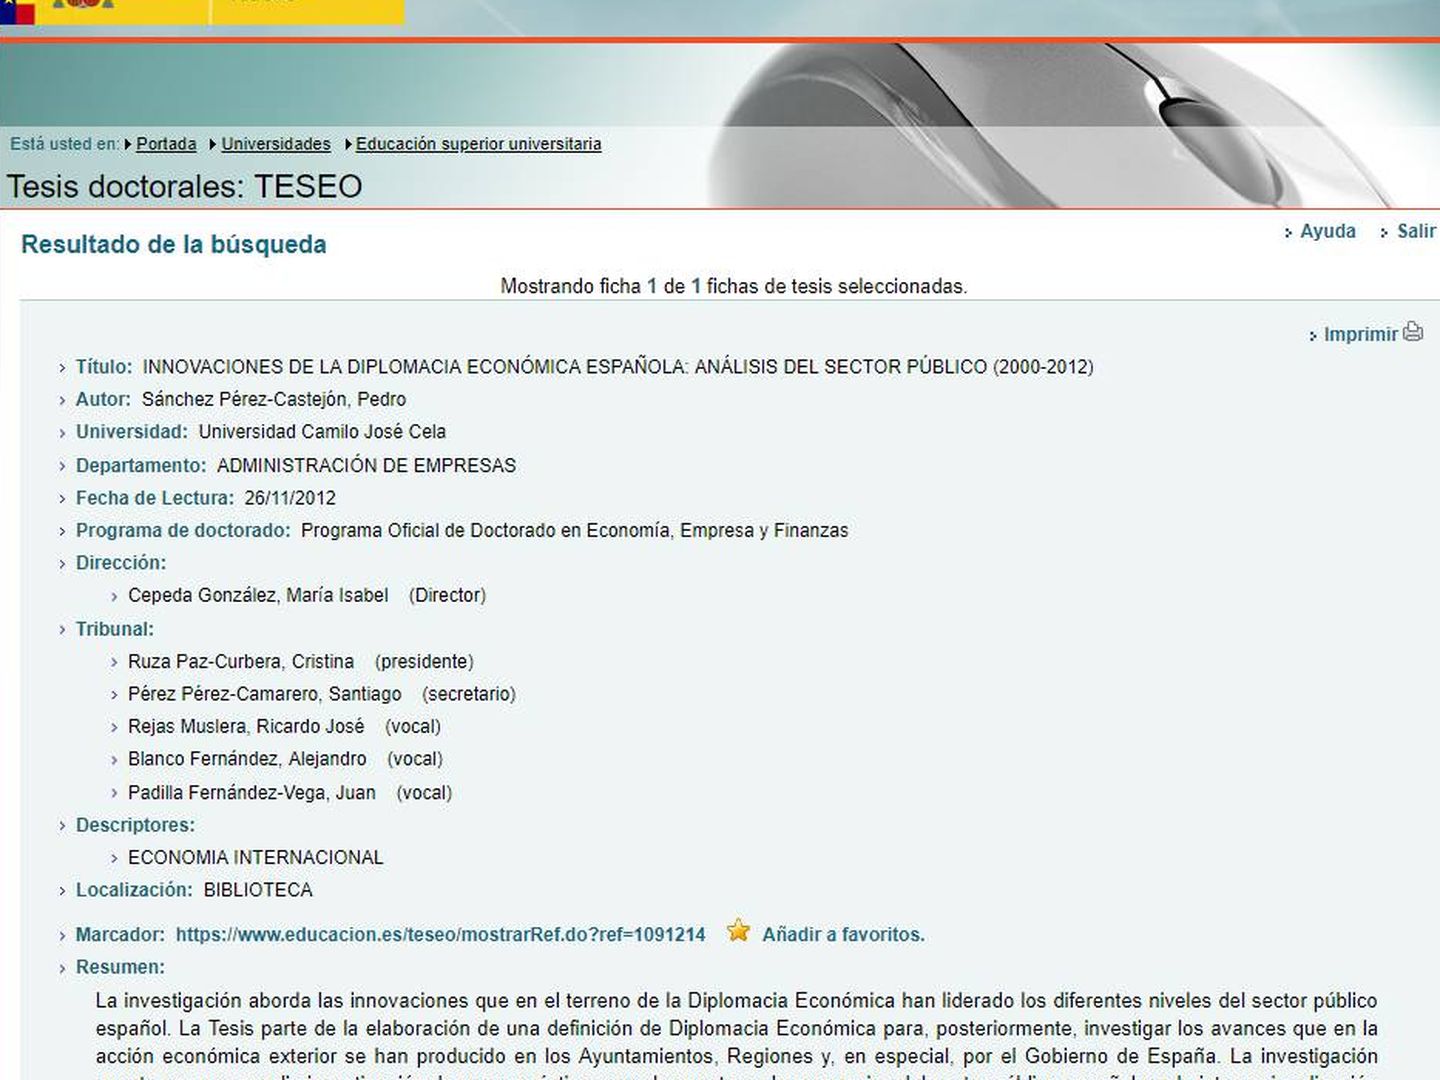 Página web de TESEO donde se da la información de la tesis de Sánchez